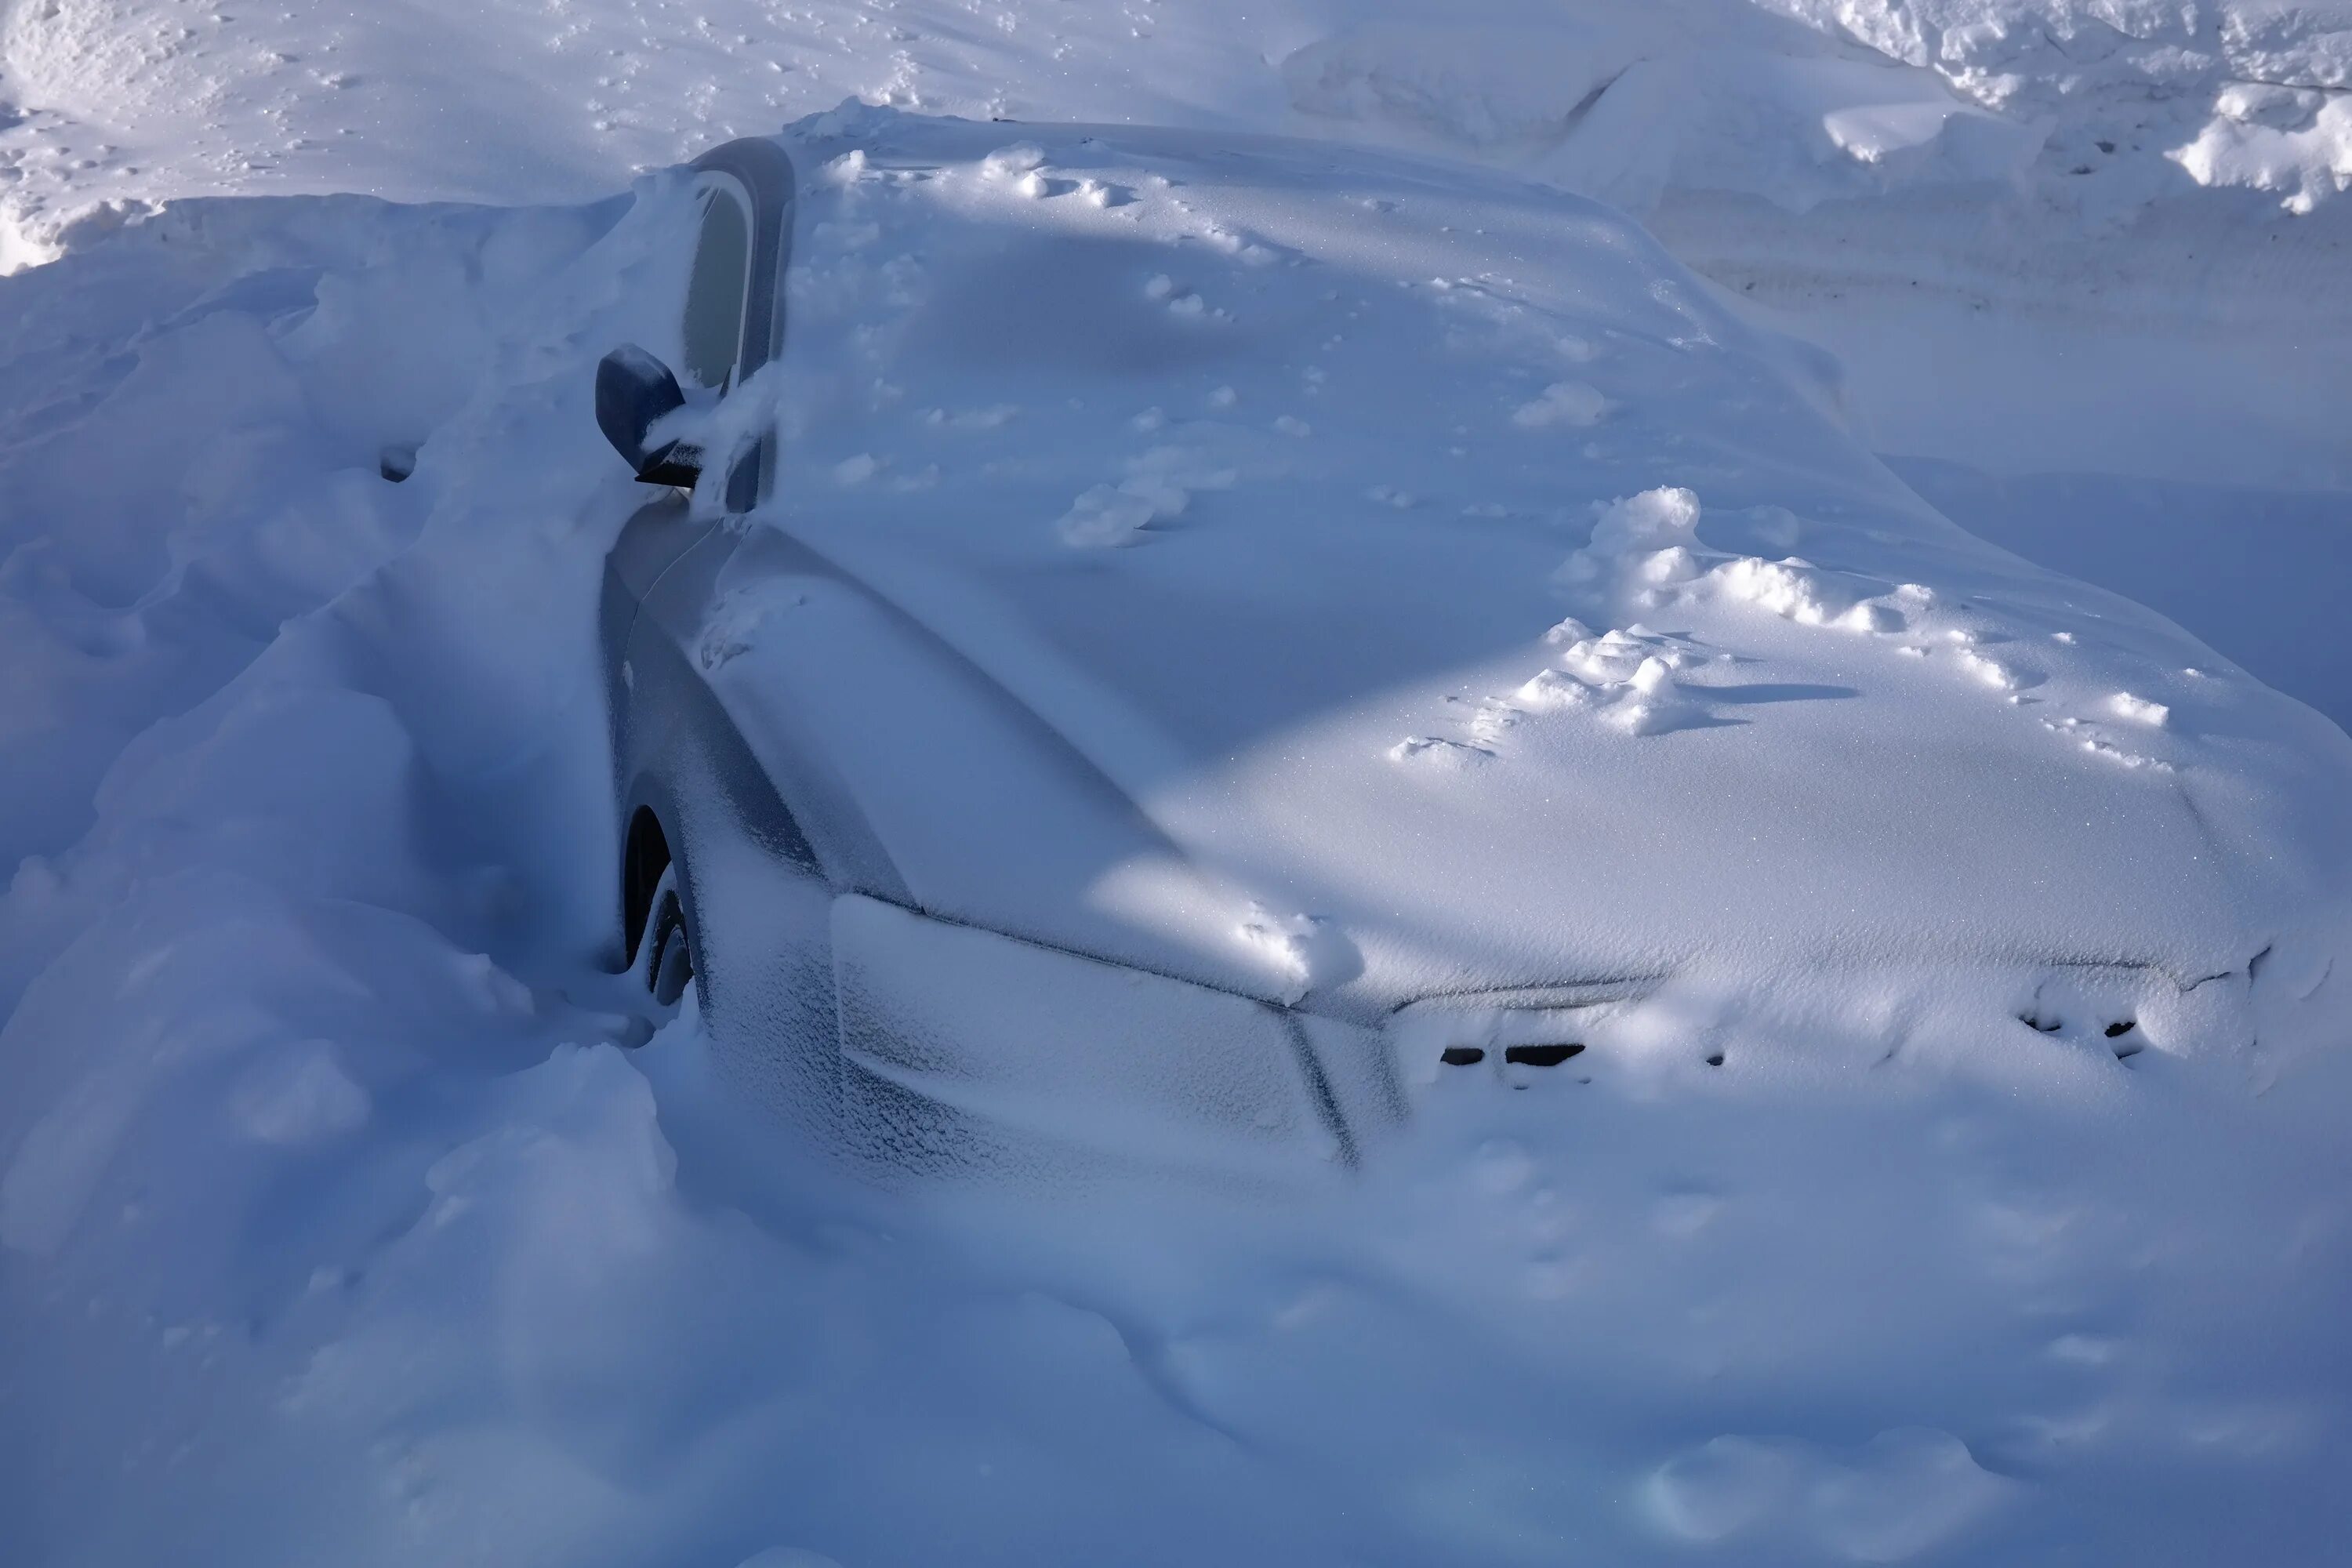 Машина снежка. Машина в сугробе. Автомобиль в снегу. Машина под сугробом. Машина занесенная снегом.